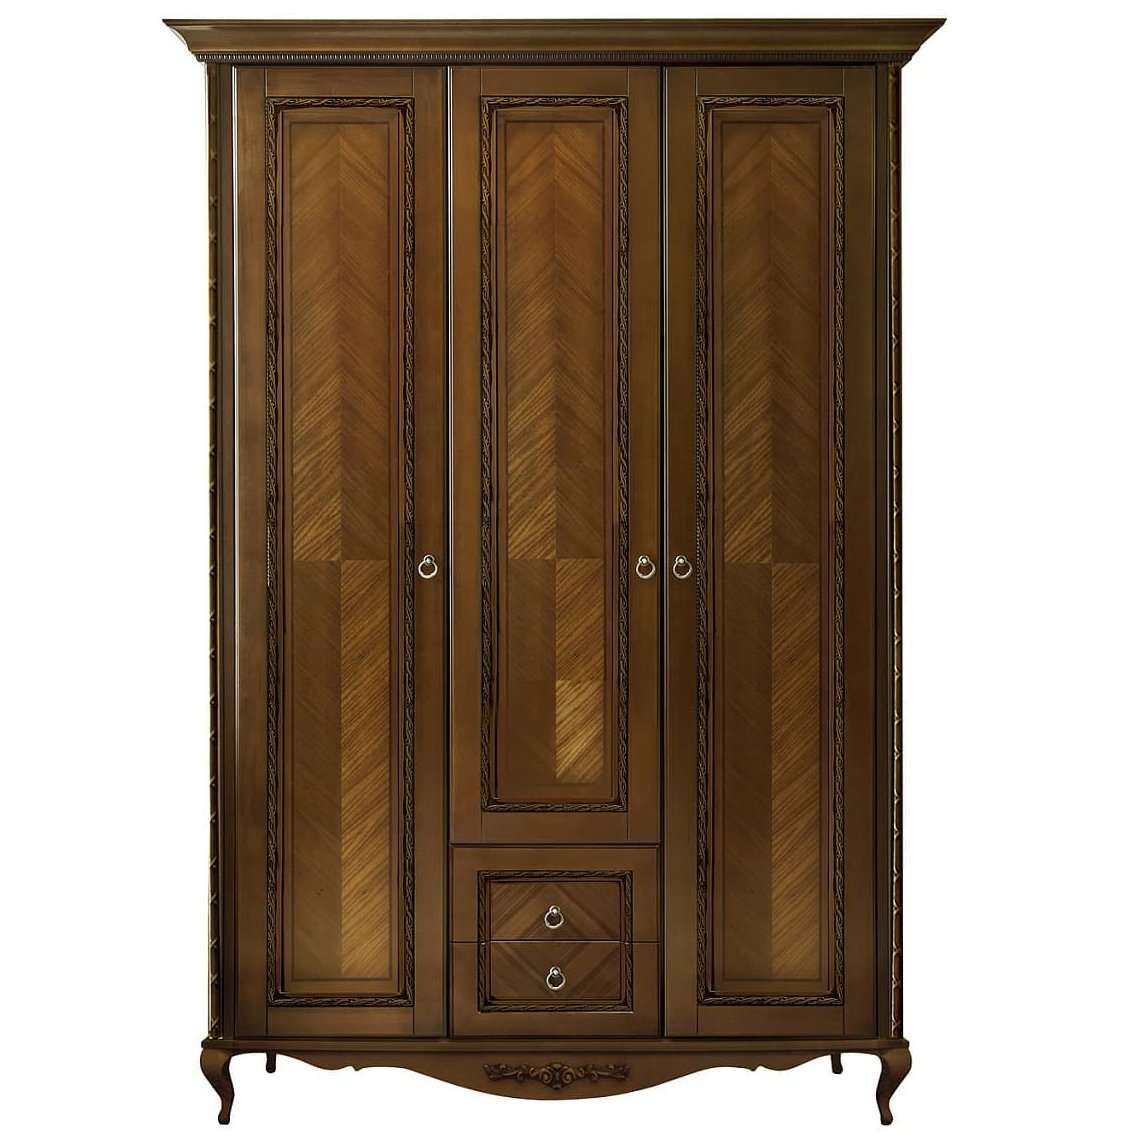 Шкаф платяной Timber Неаполь, 3-х дверный 159x65x227 см цвет: орех (T-523Д)T-523Д